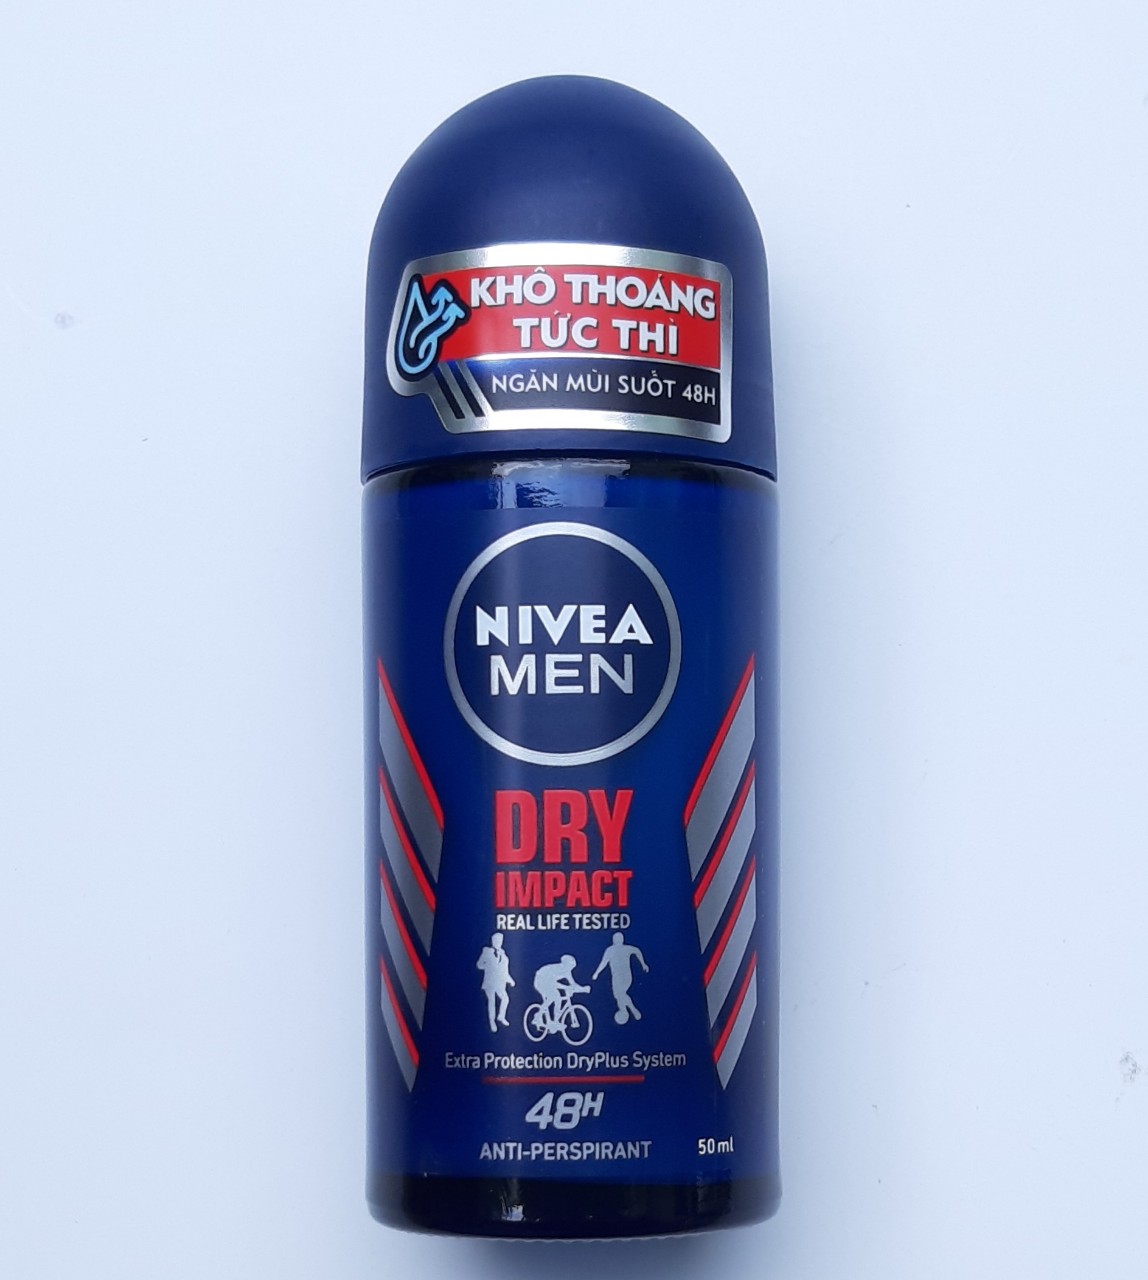 HCM [48hi] Lăn khử mùi nam Nivea Men Dry Impact 50ml khô thoáng tức thì ngăn mùi suốt 48h